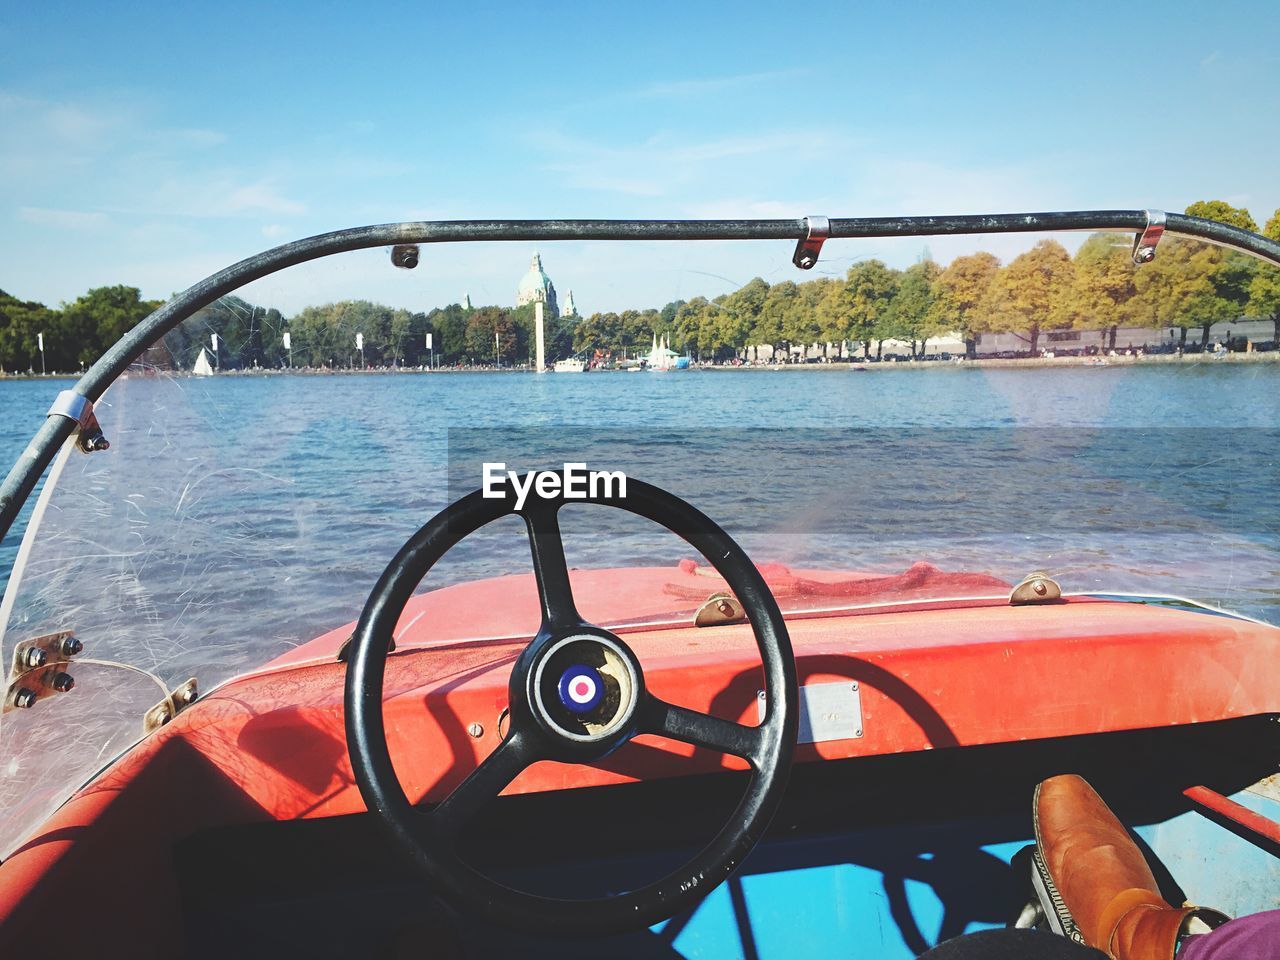 Motorboat in lake